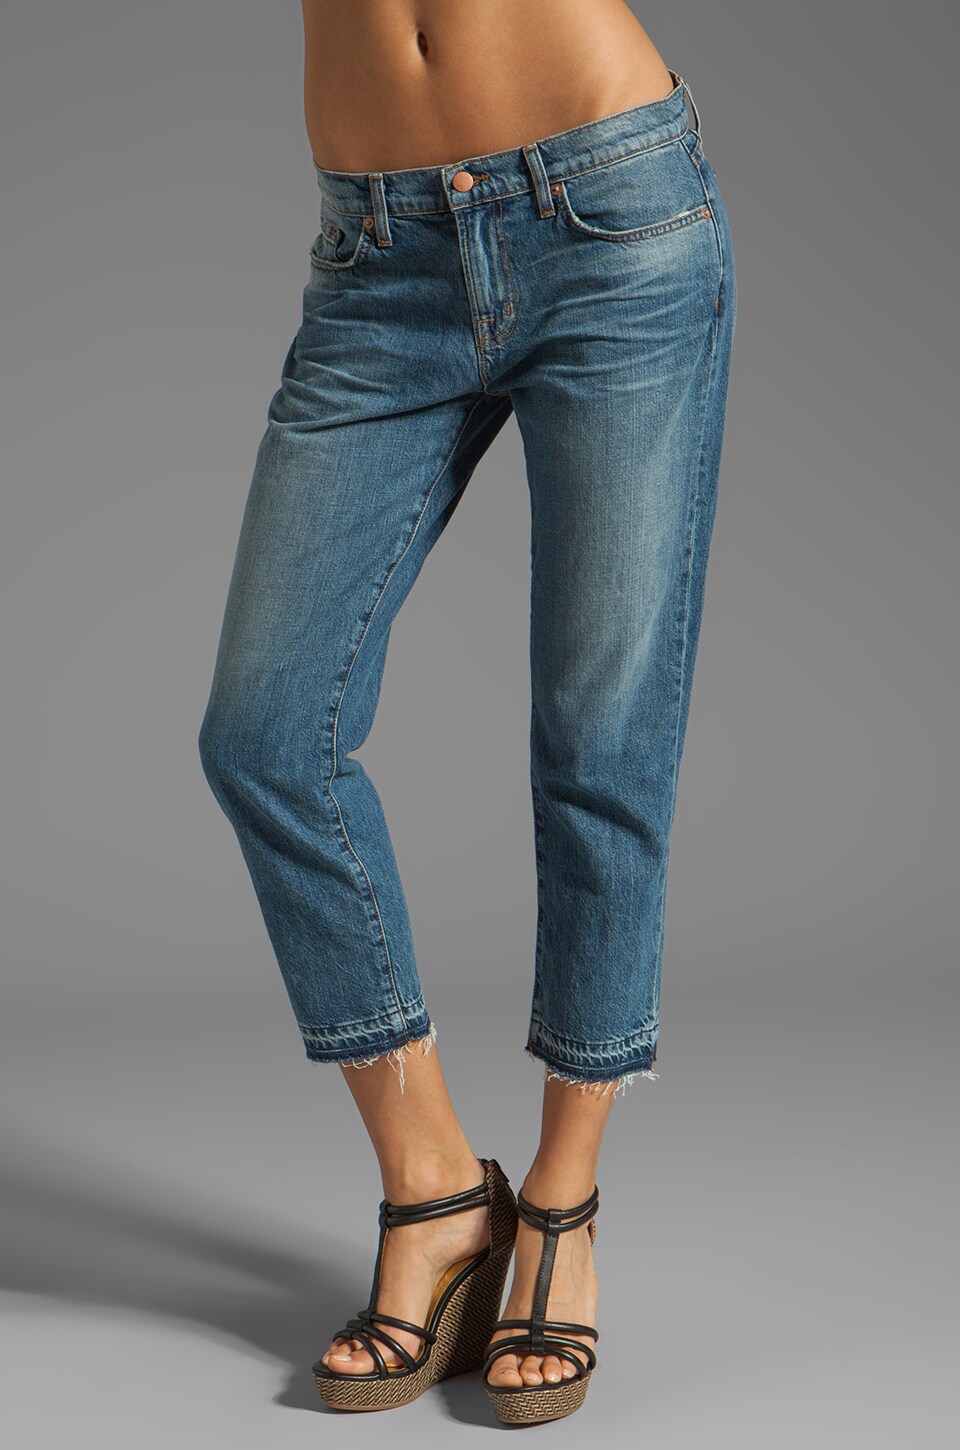 обрезанные джинсы женские фото